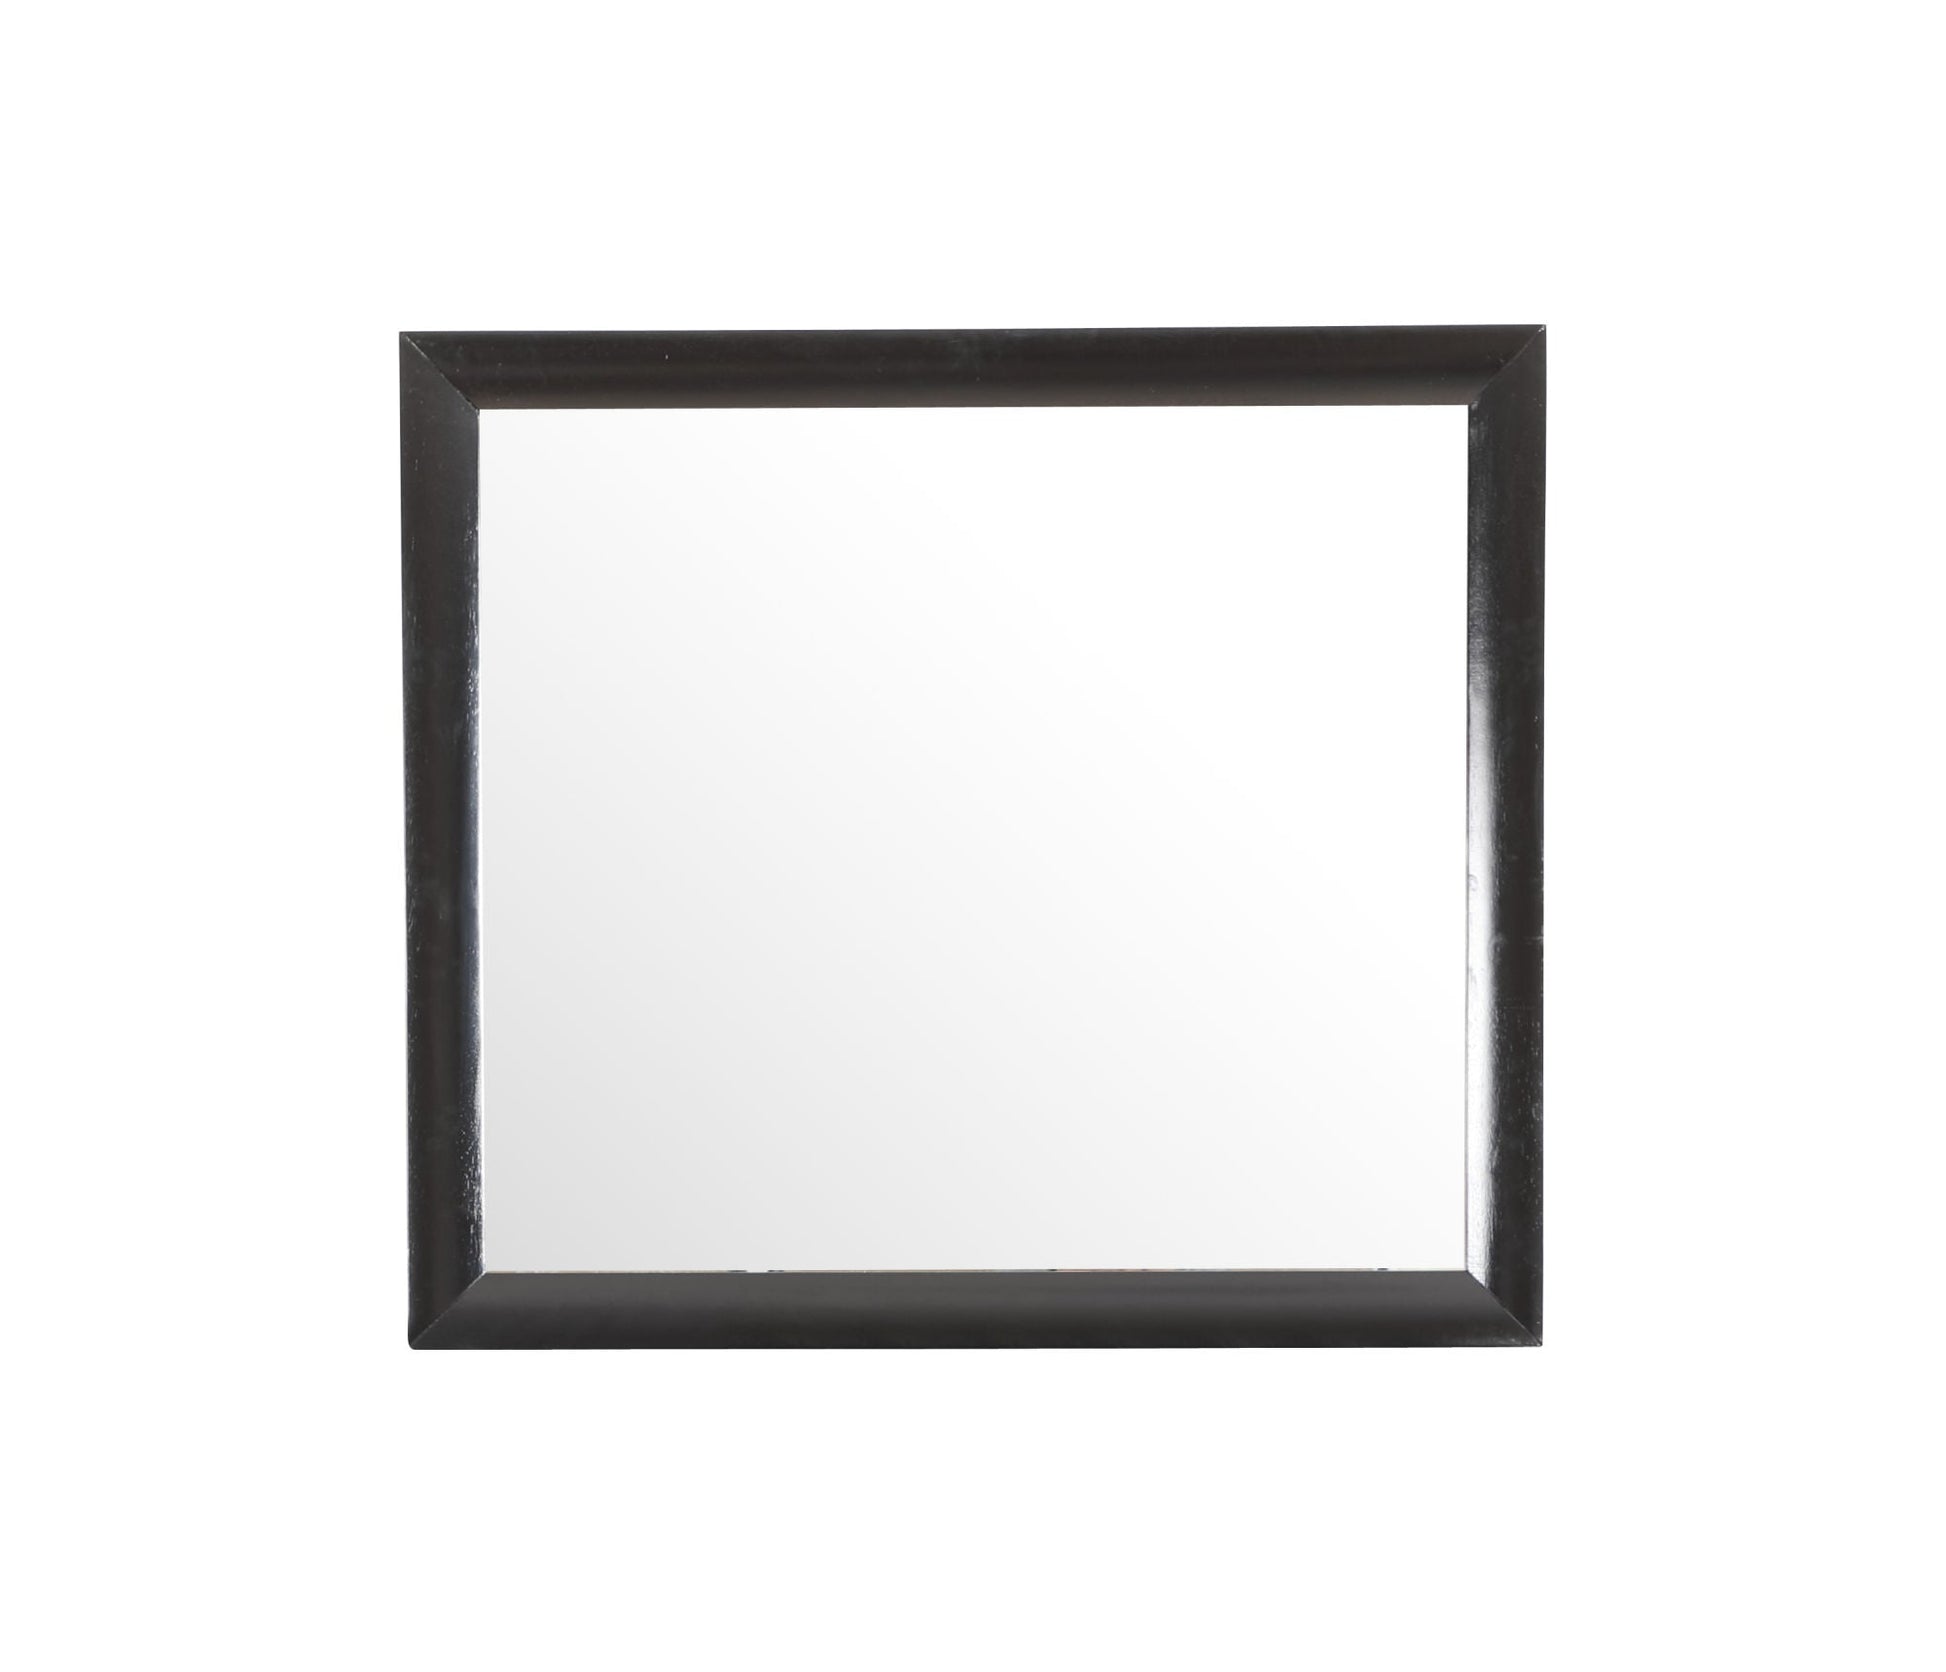 Glory Furniture Marilla G1500-M Mirror , Black Home Decor by Design